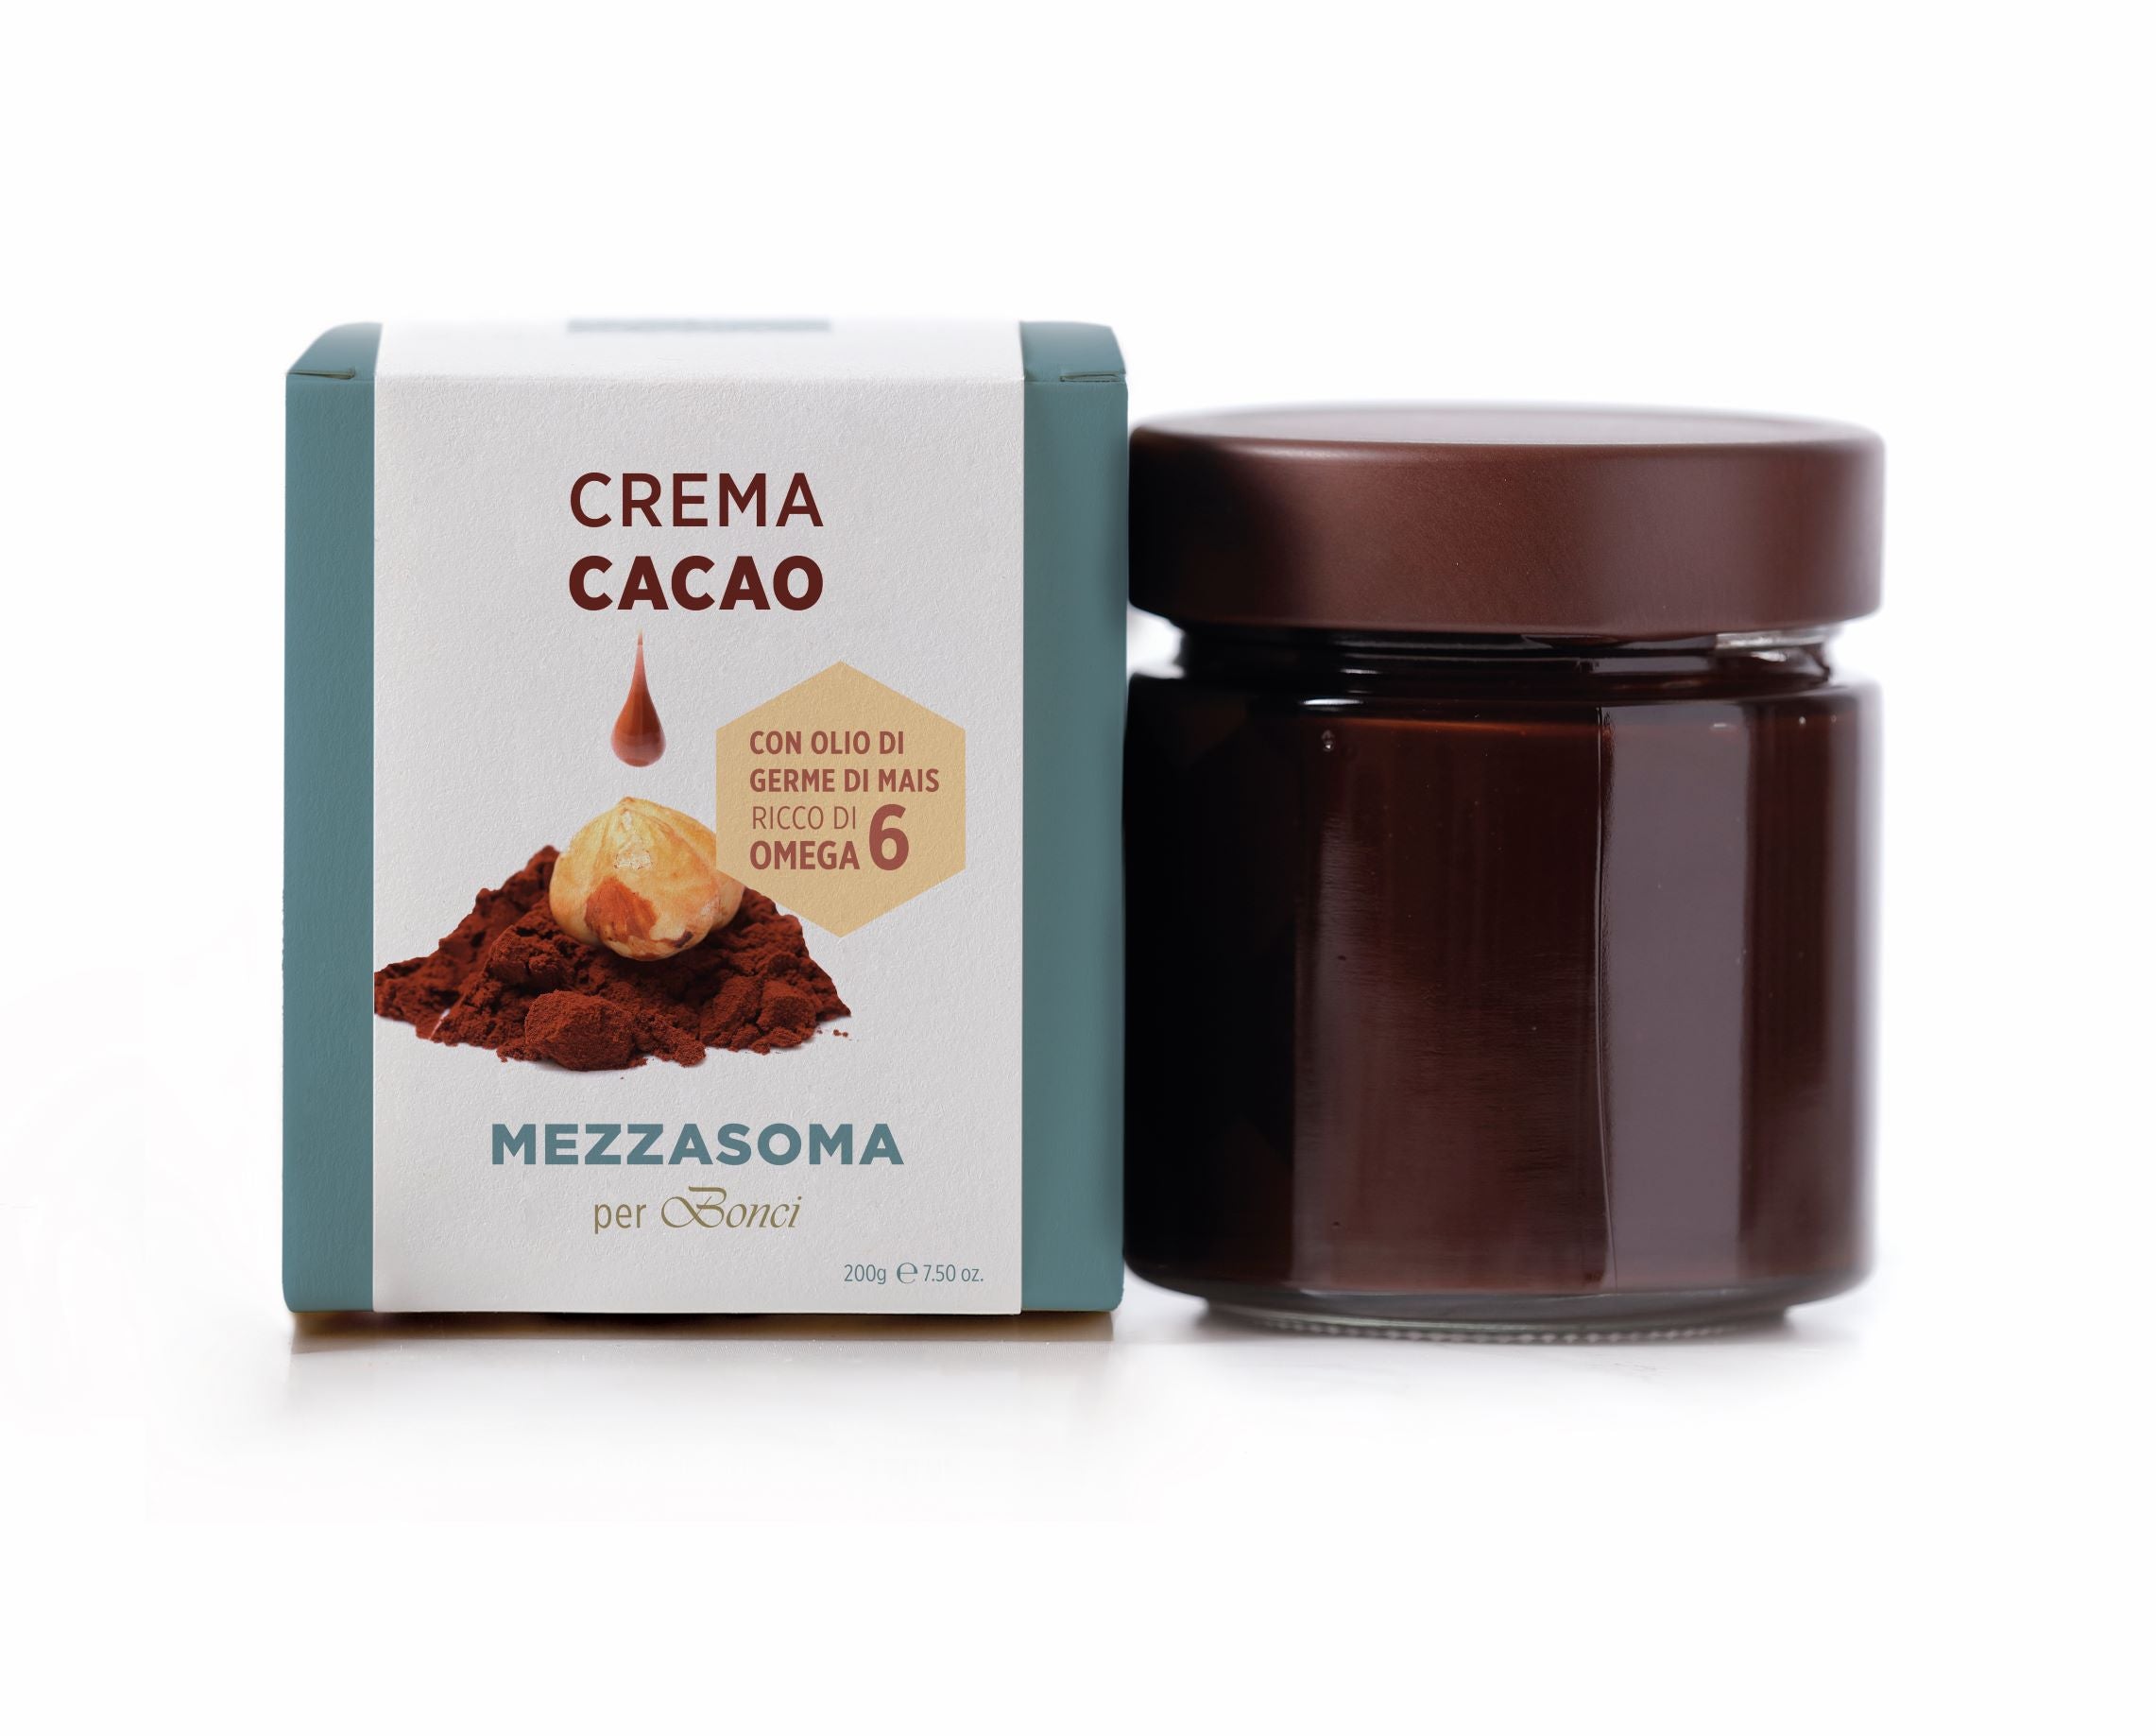 Mezzasoma - crema spalmabile in due versioni NOCCIOLA 52% o CACAO